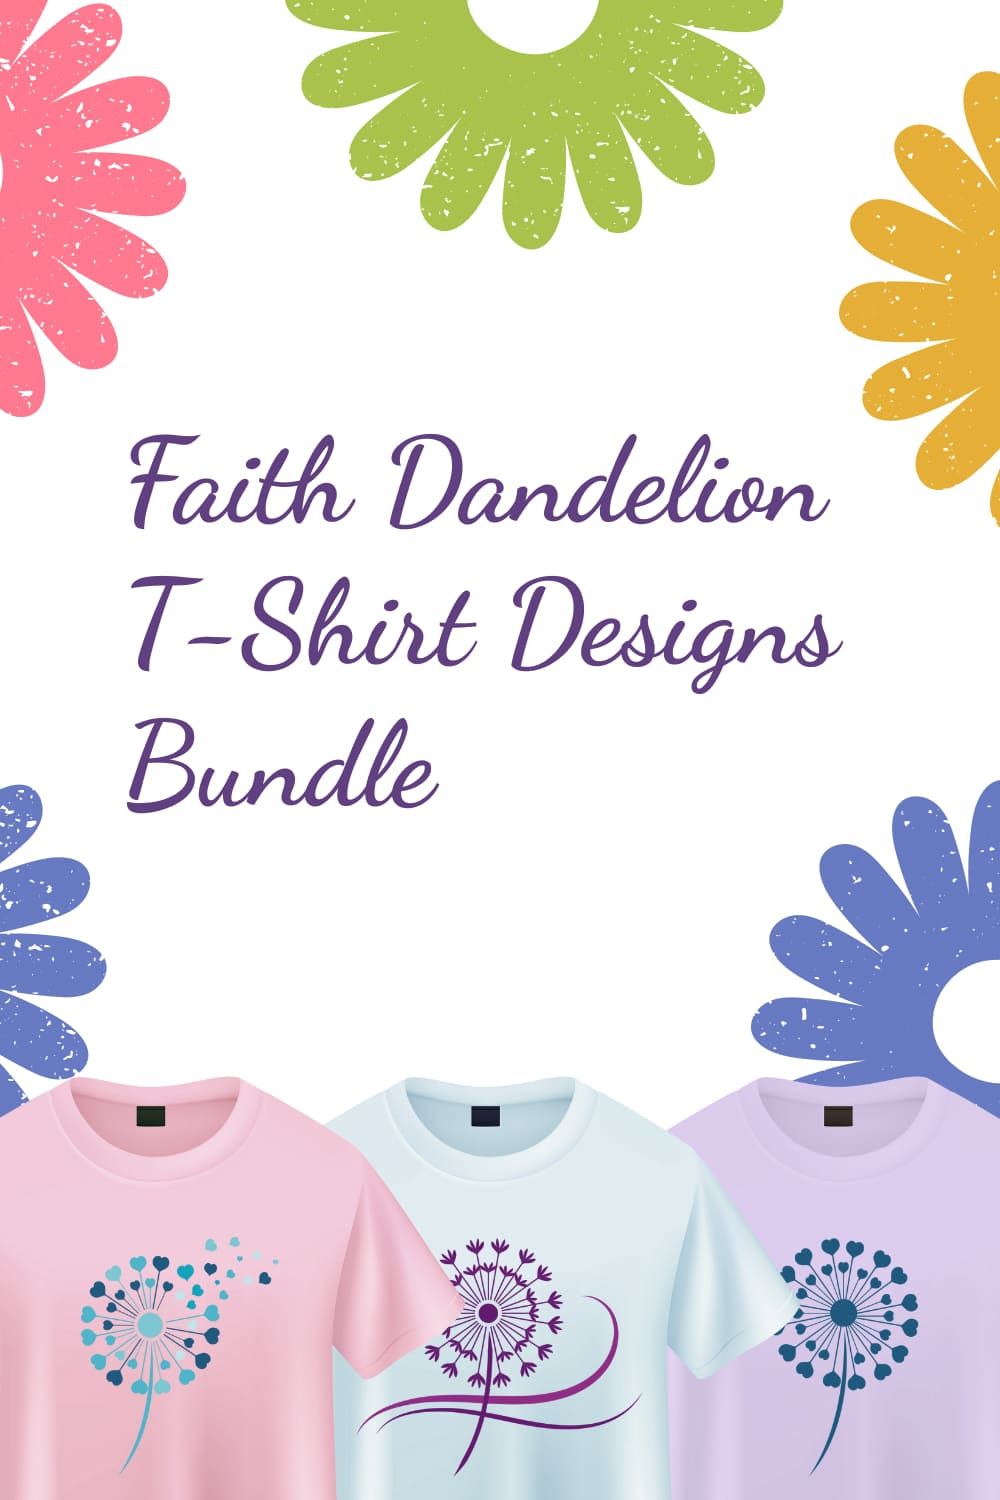 Faith Dandelion T-shirt Designs Bundle - Pinterest.